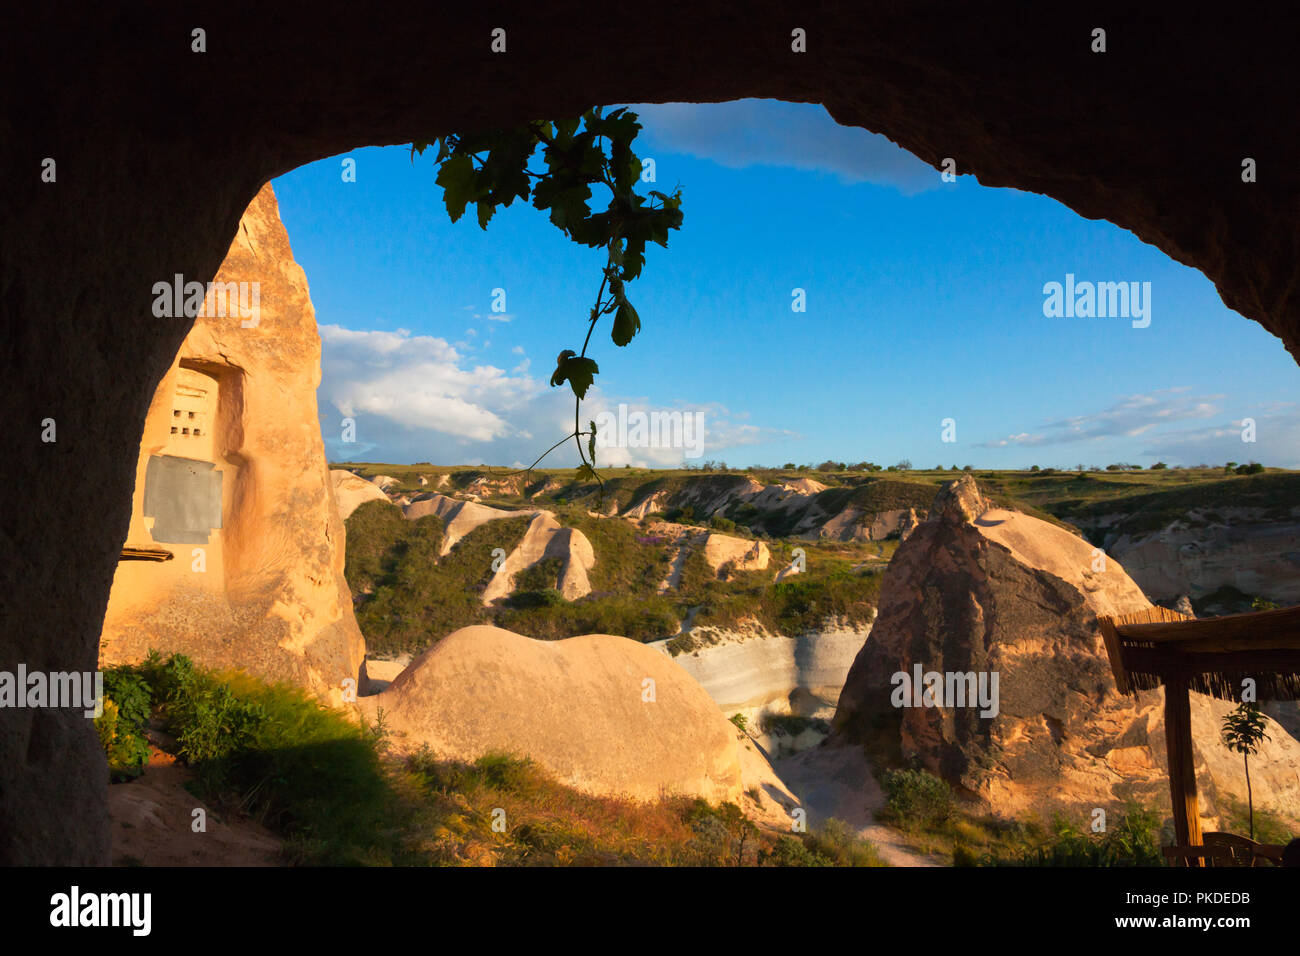 Le case scavate nella roccia formazioni in valle, Goreme, Cappadocia, Turchia (Patrimonio Mondiale dell'UNESCO) Foto Stock